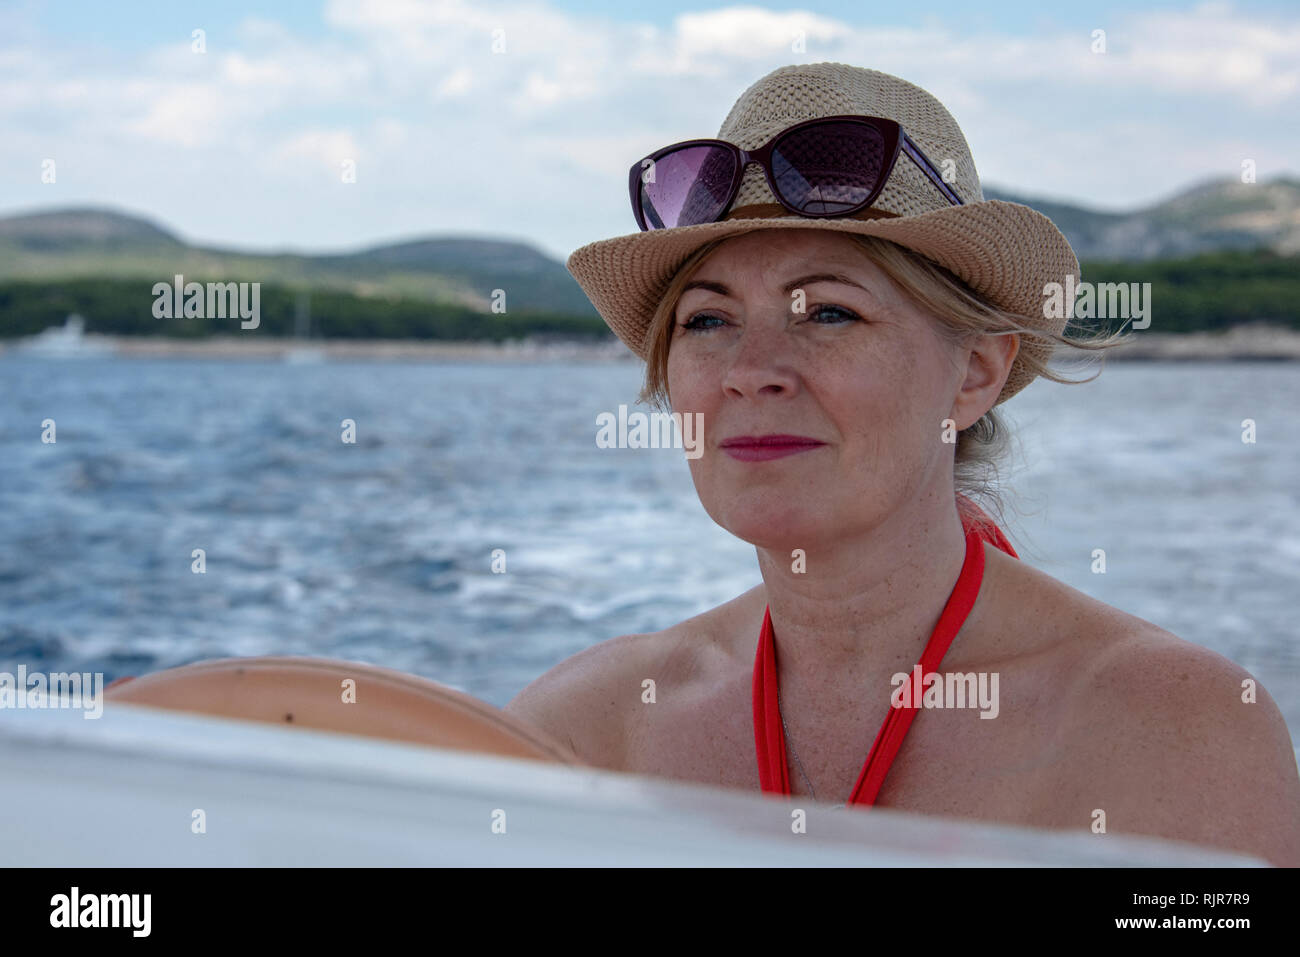 La Croatie, Hvar - Juin 2018 : entre 40 et 46 femmes dans la conduite d'un petit bateau. Elle porte une robe rouge et un chapeau chapeau et des lunettes de soleil sur sa tête. Littoral est visible Banque D'Images